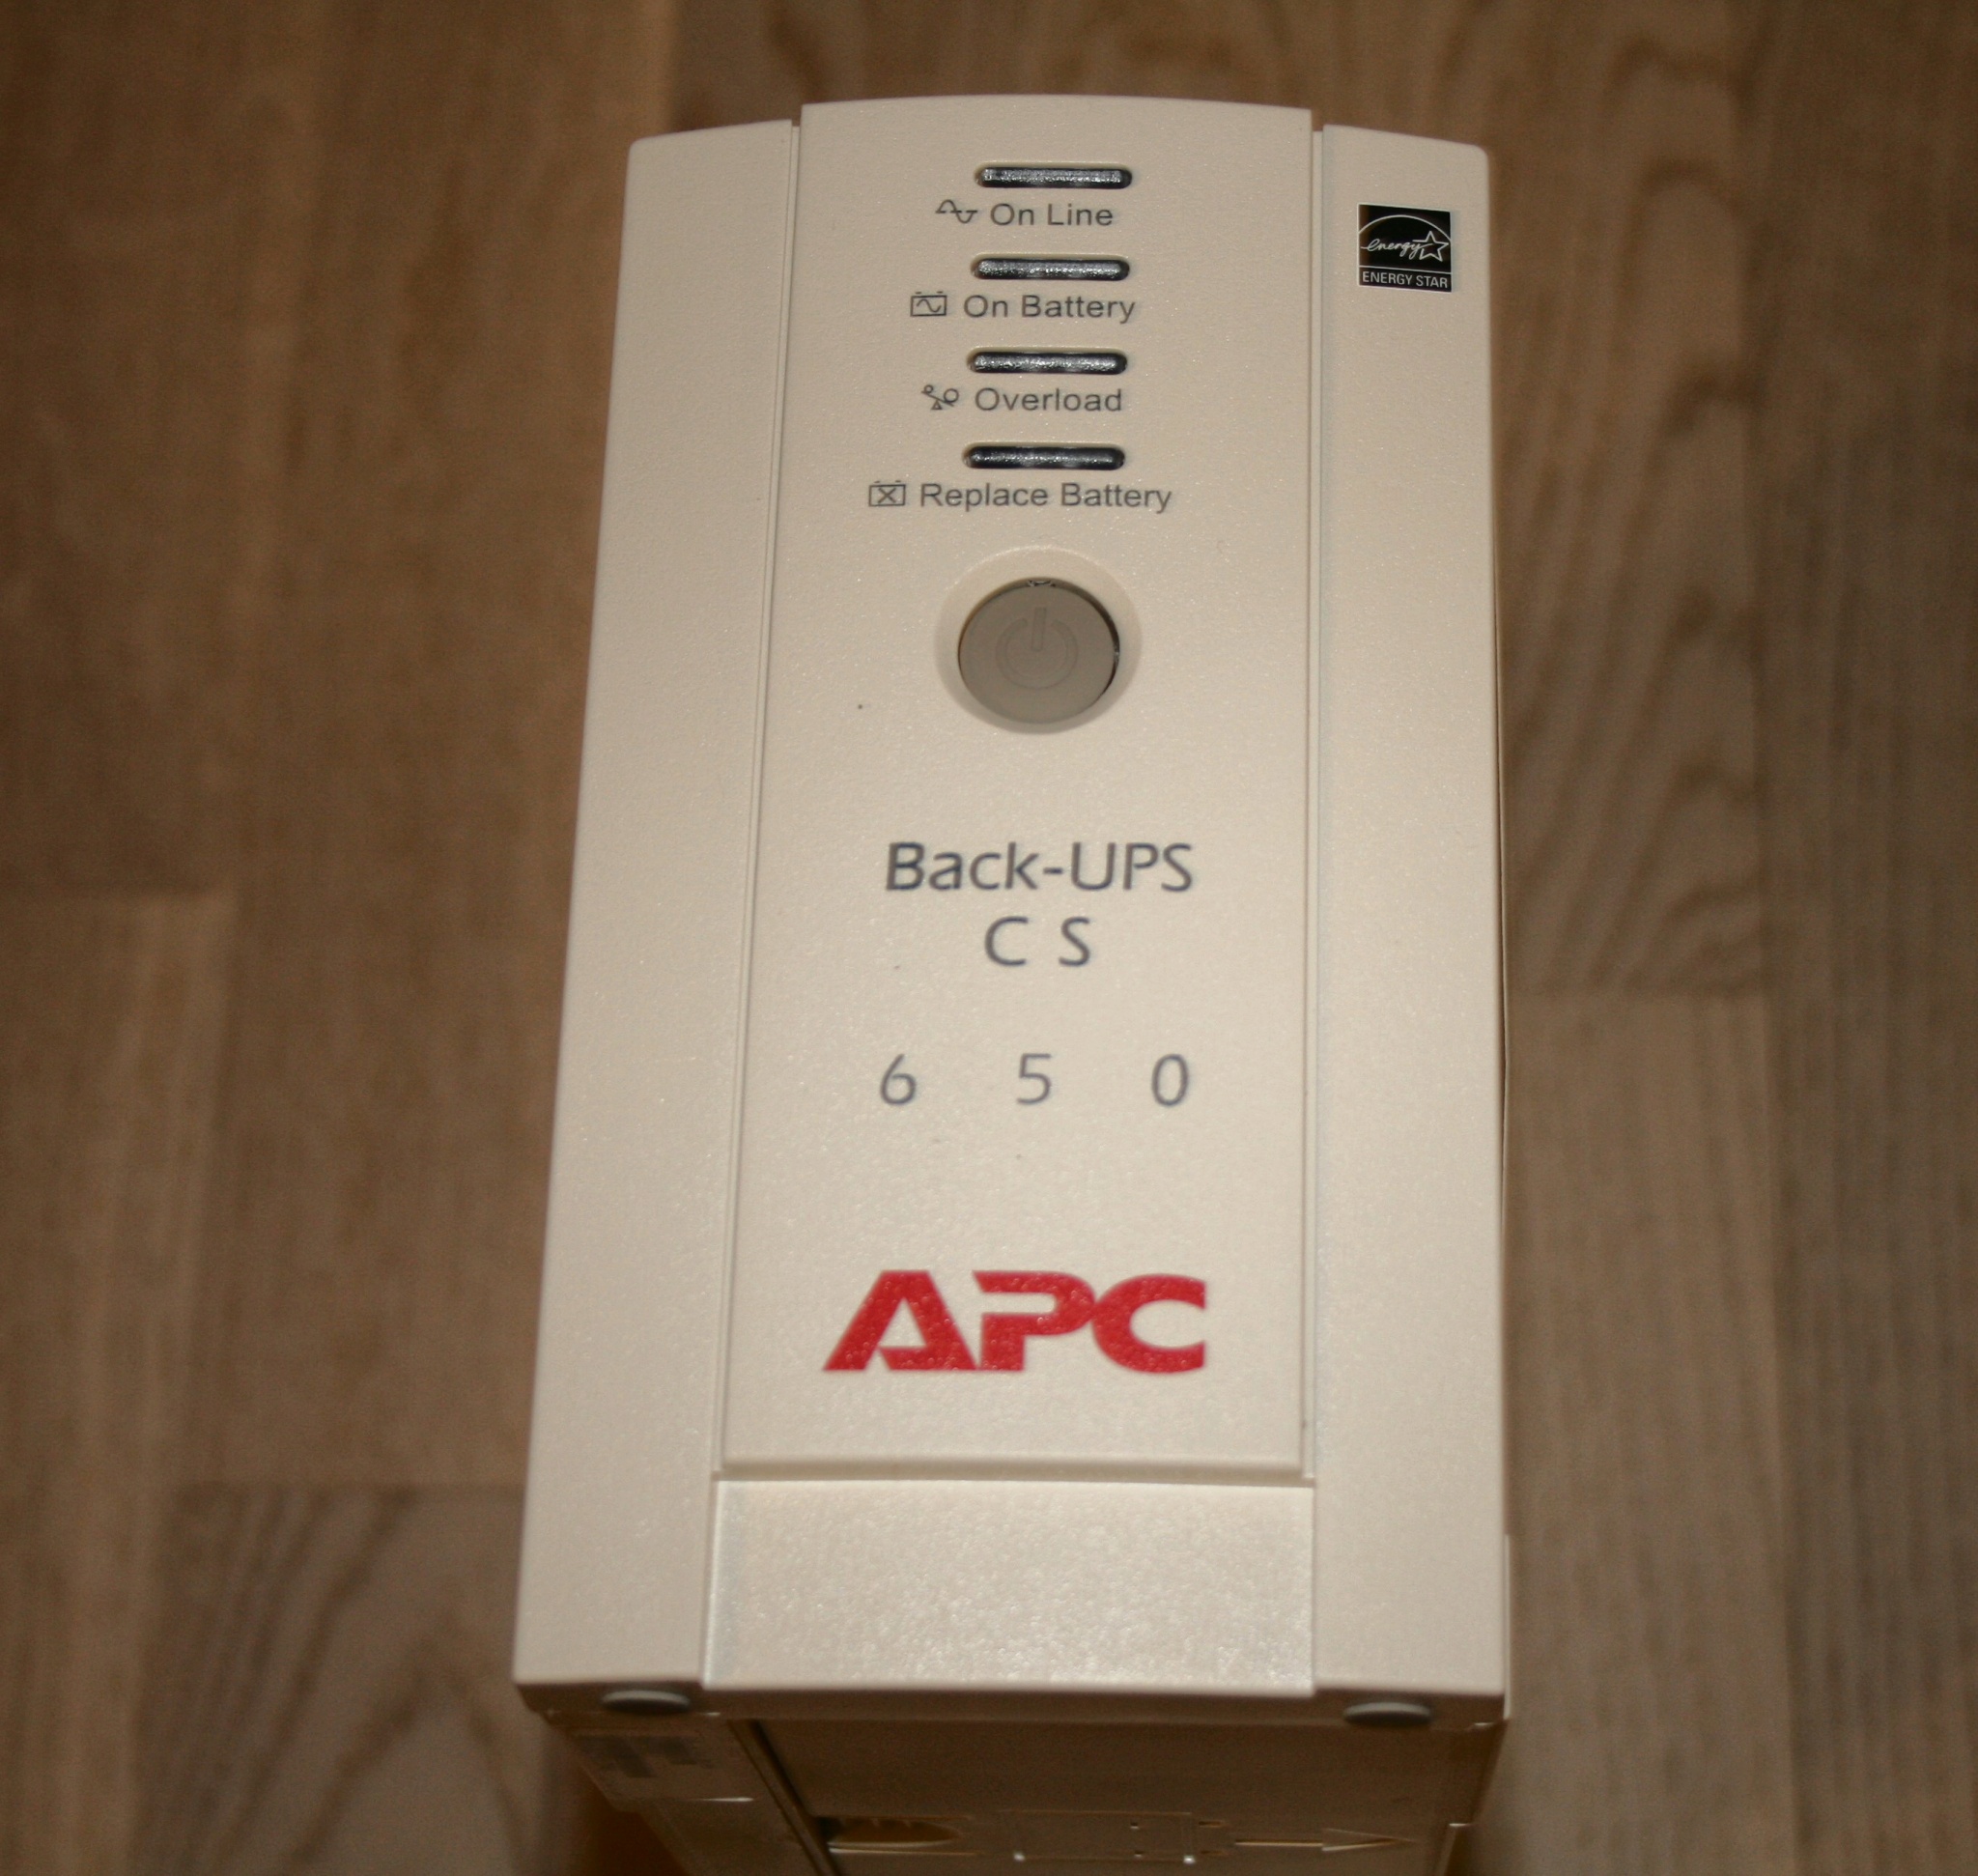 Ups cs 650. APC back-ups CS 650. Back ups bk650ei. Back ups CS 650. Back-ups CS 650va.